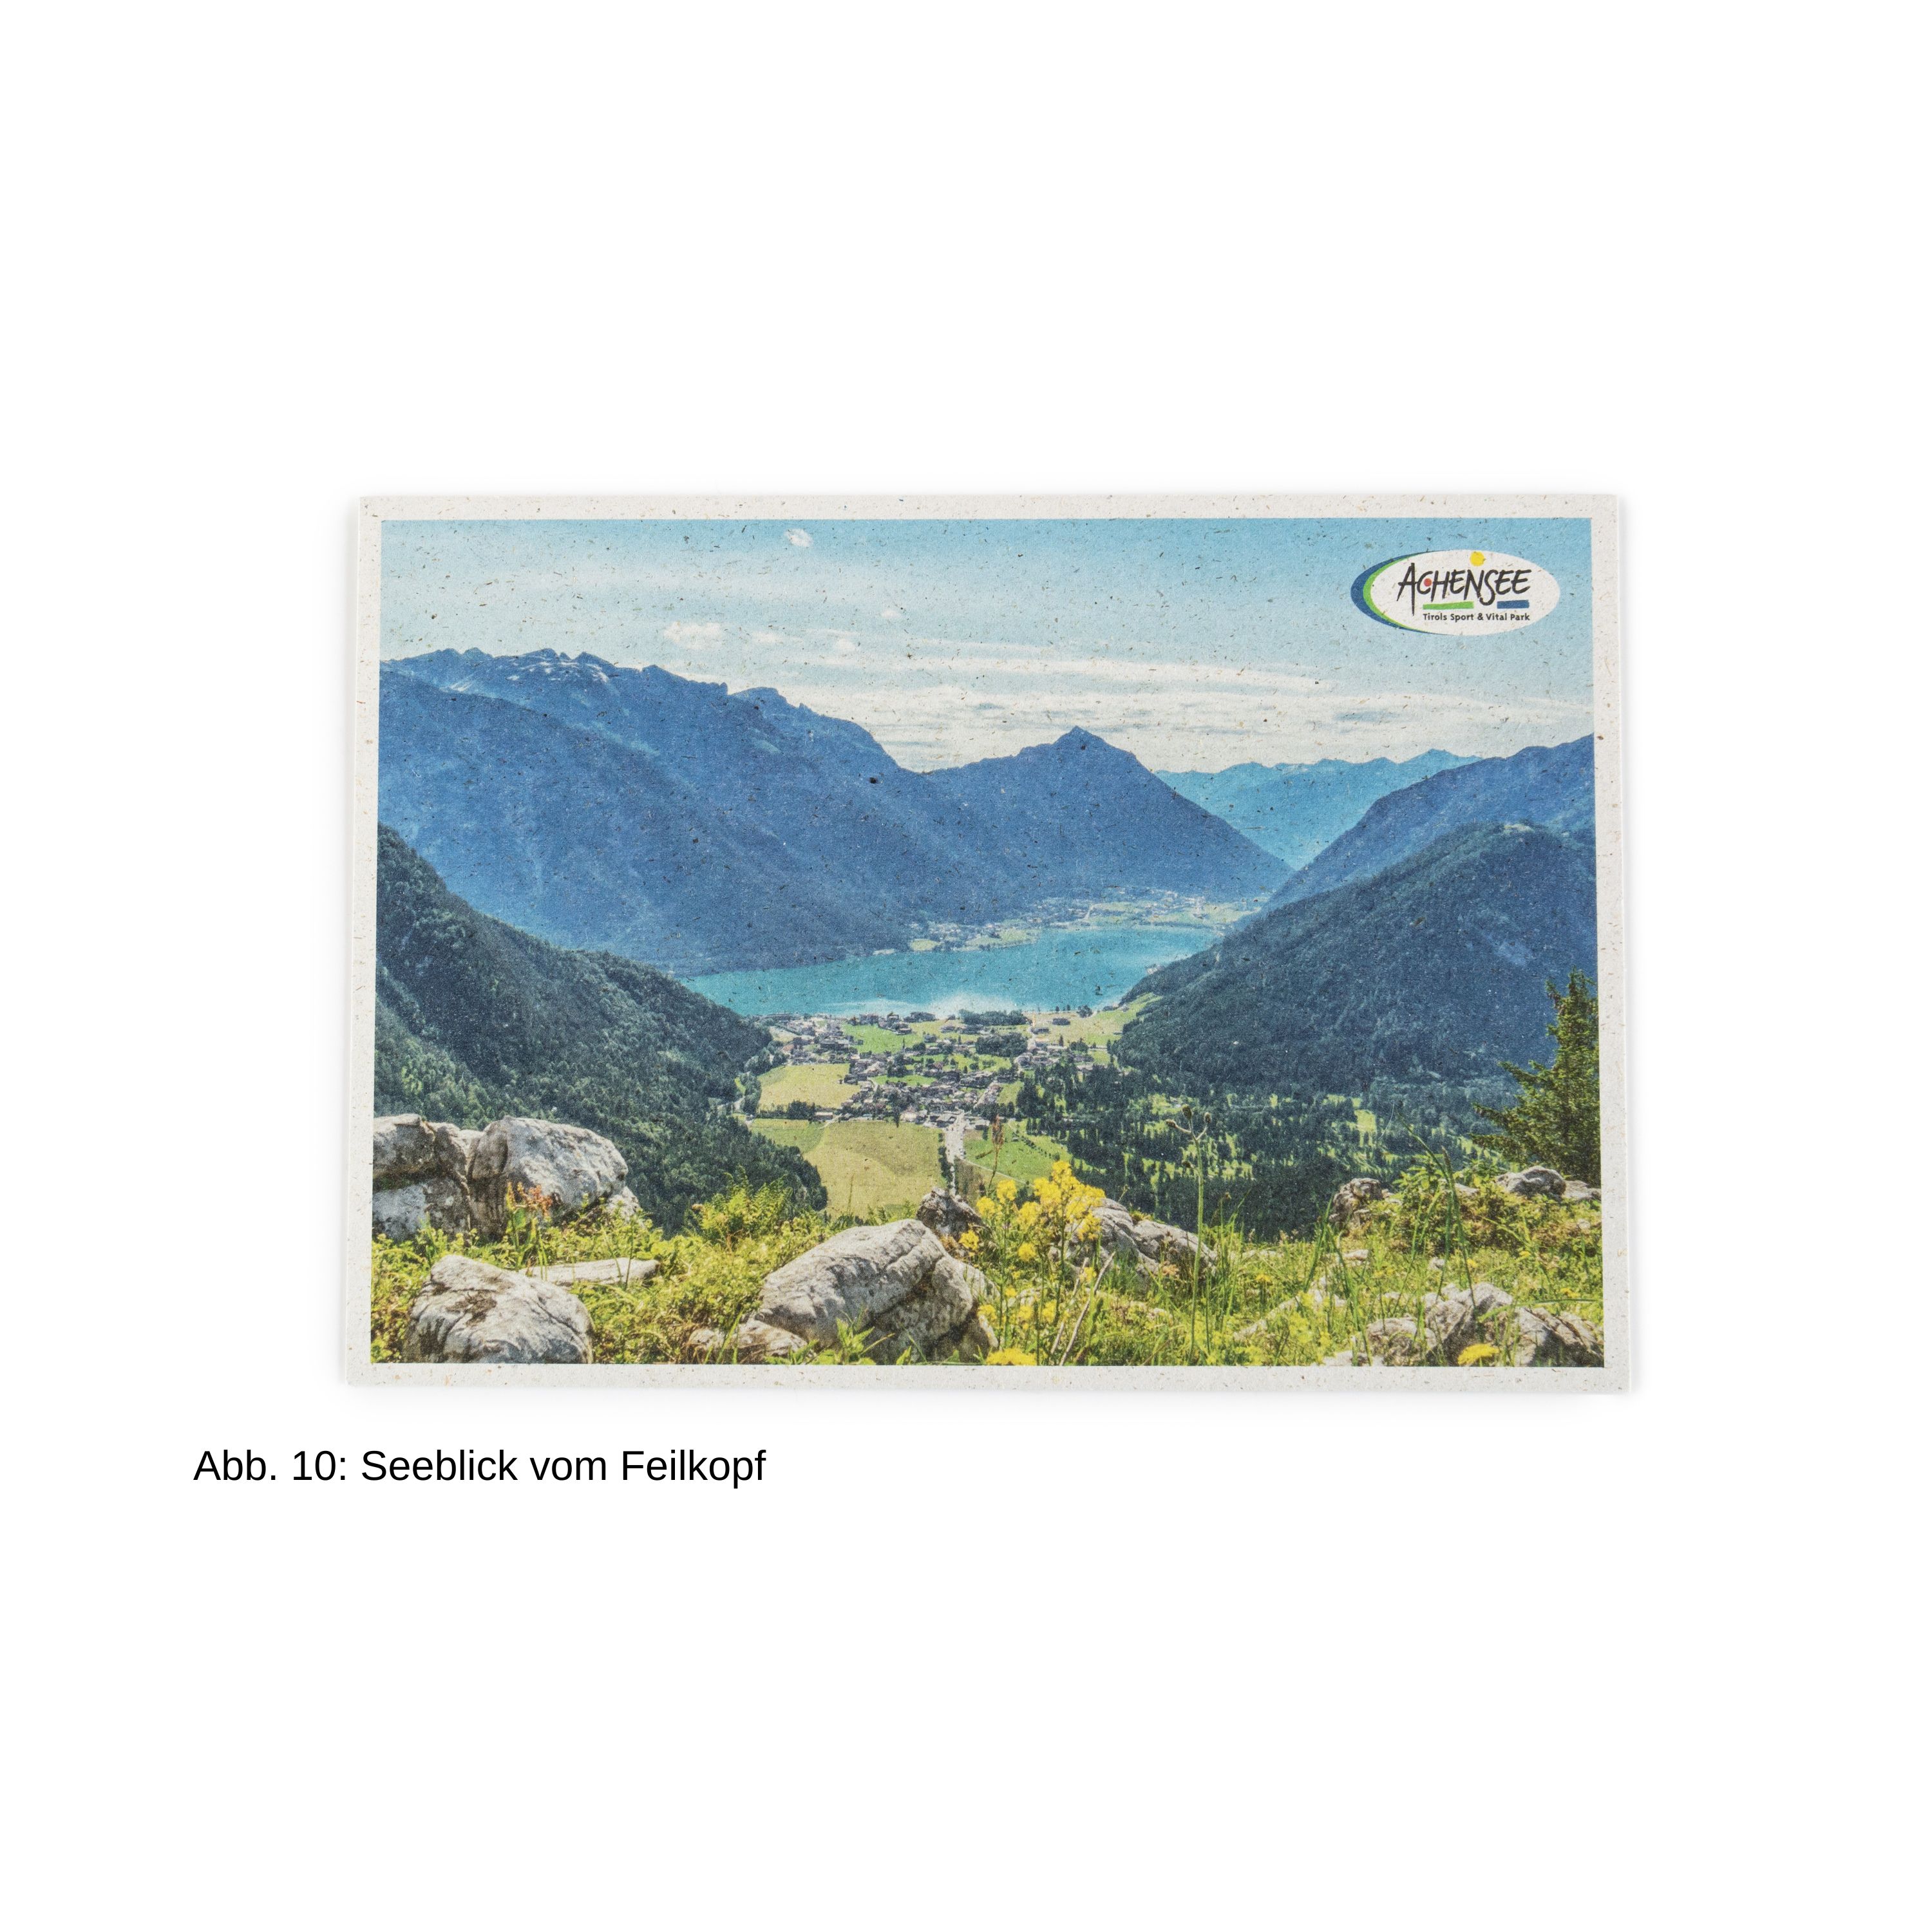 Postkarte mit Seeblick vom Feilkopf